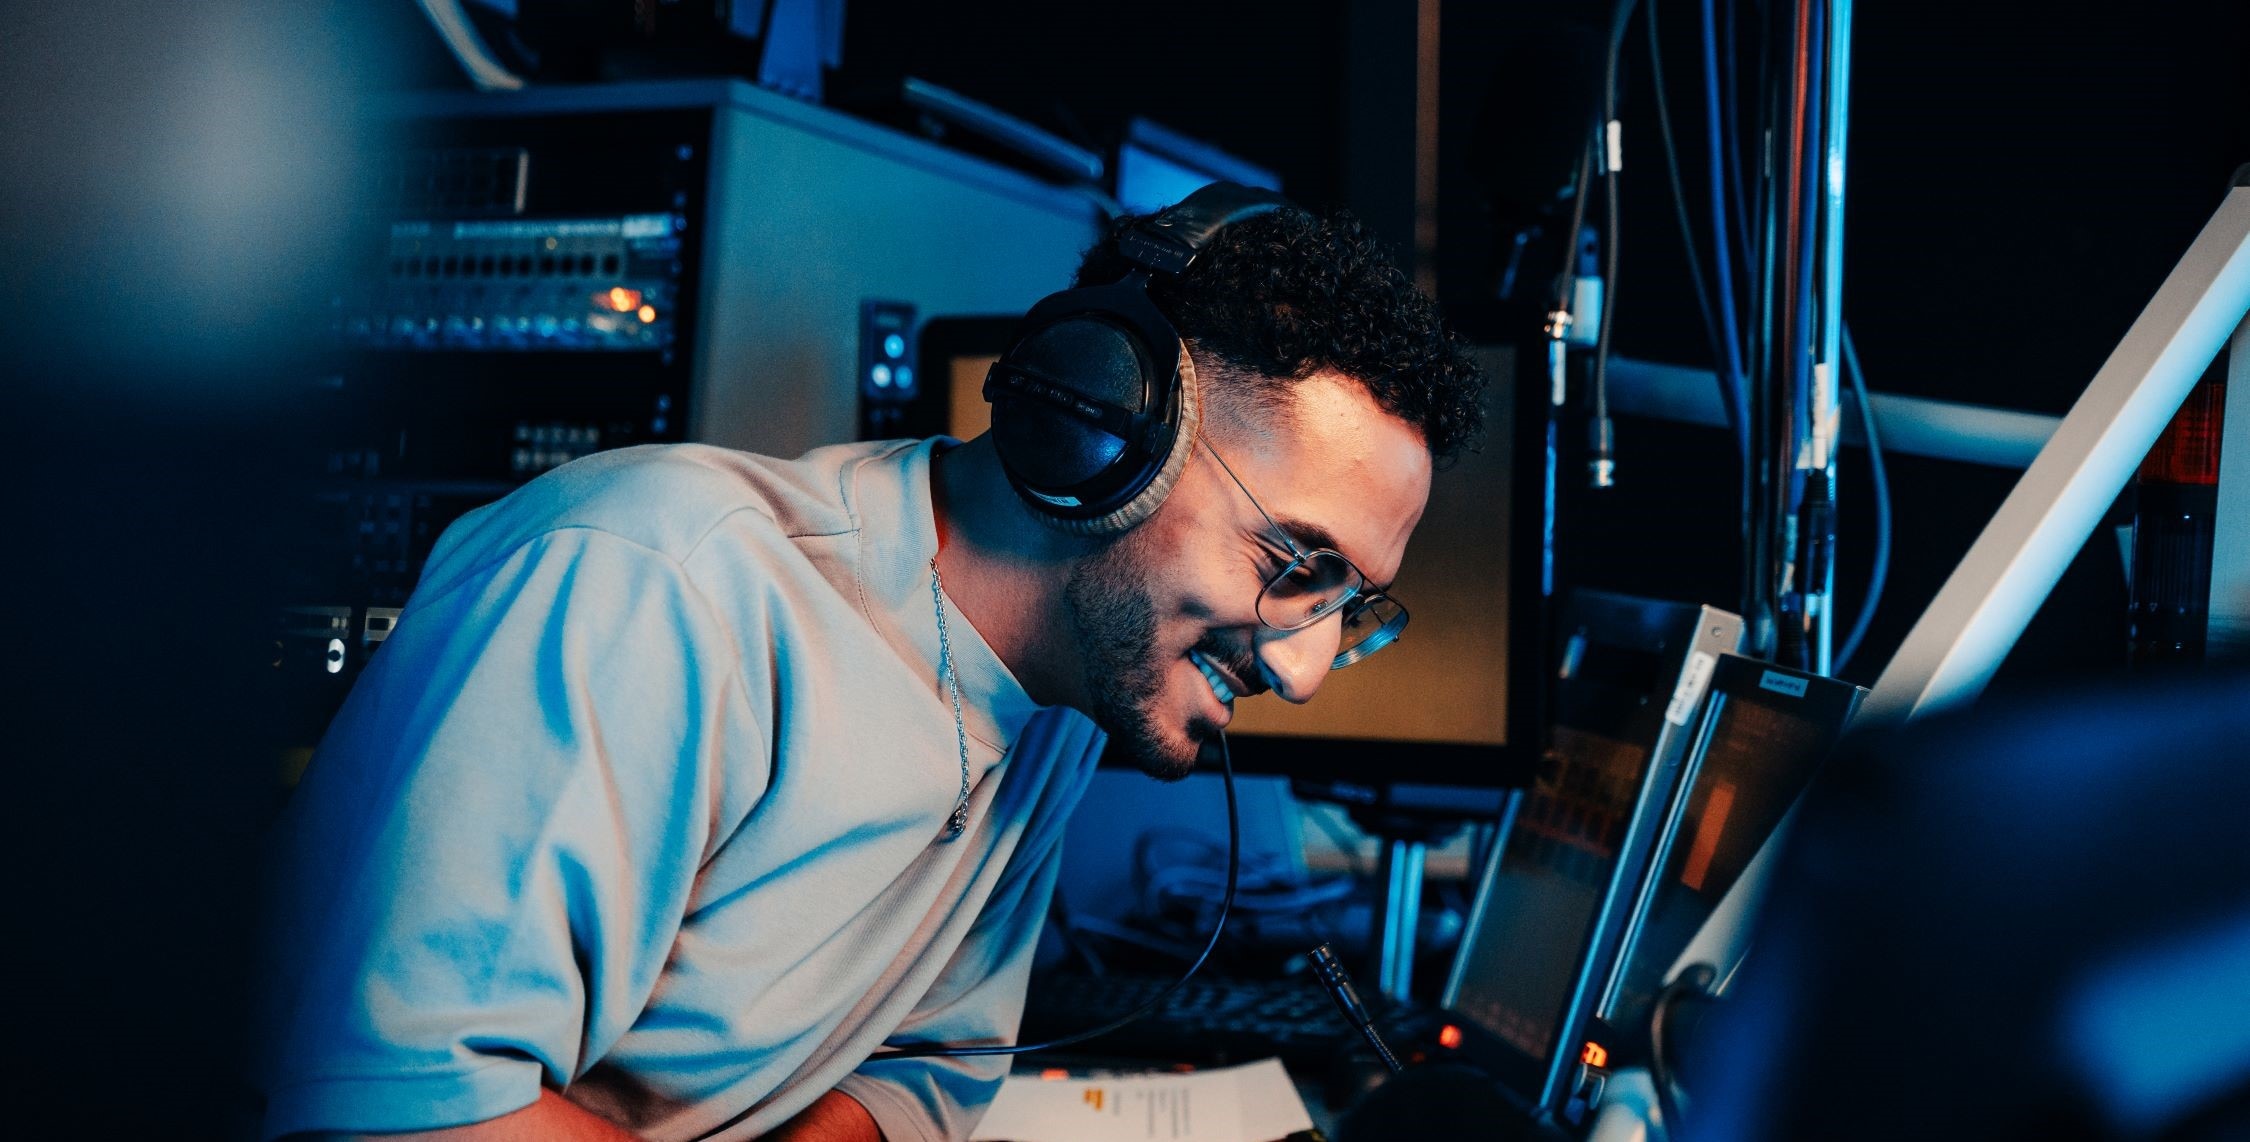 Dans un studio de la RTBF, un homme souriant, un casque audio sur les oreilles, est assis devant deux écrans d'ordinateur. Un panneau de réglages est visible en arrière-plan.